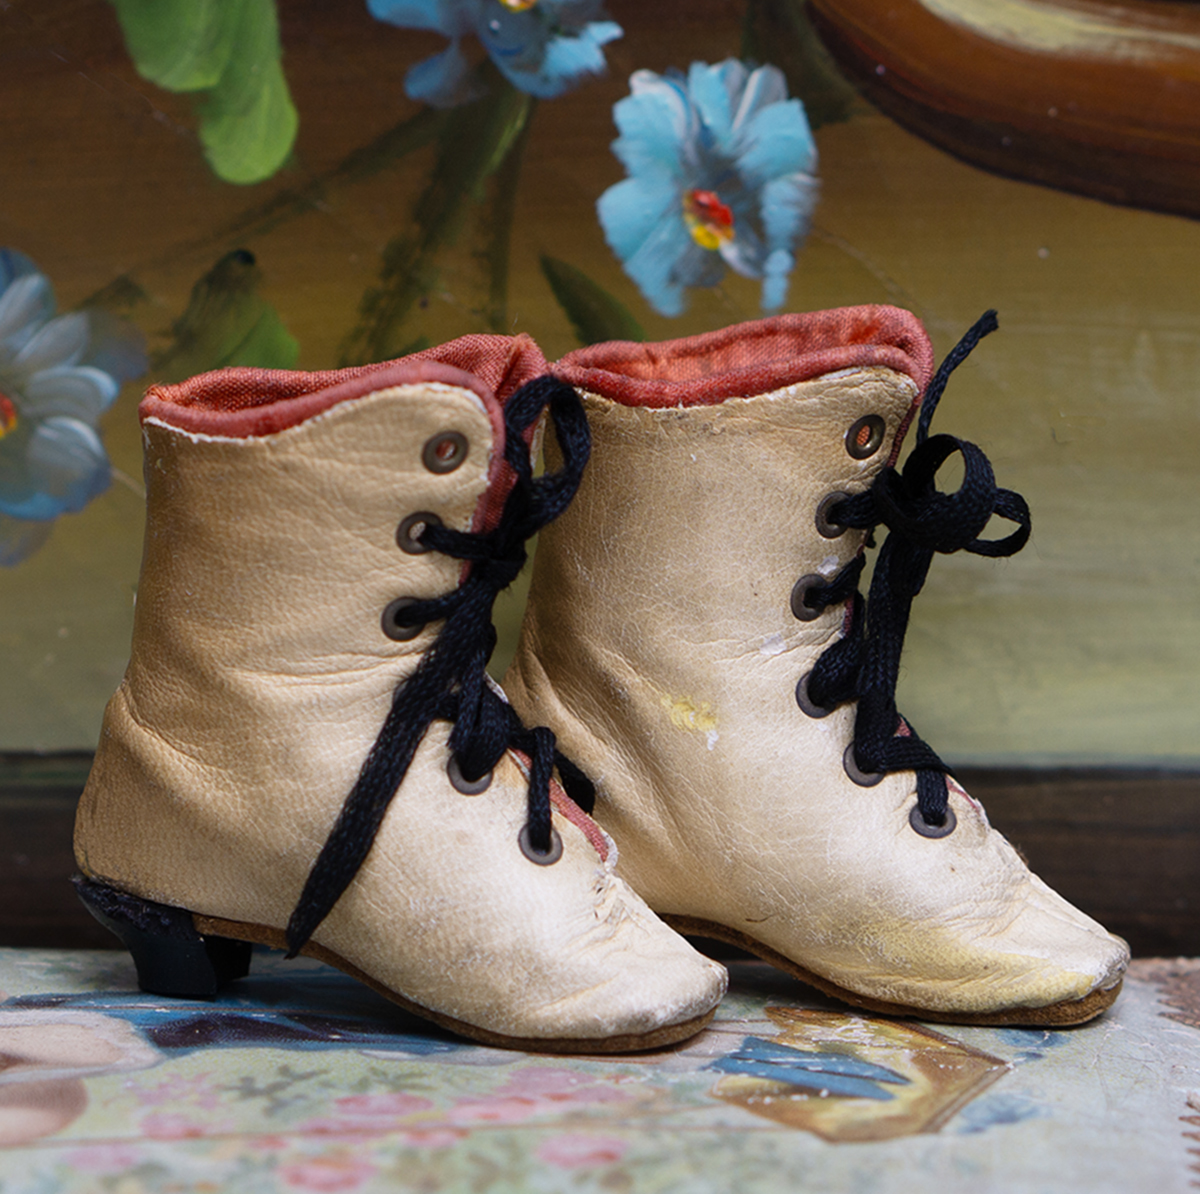 Antique fashion boots